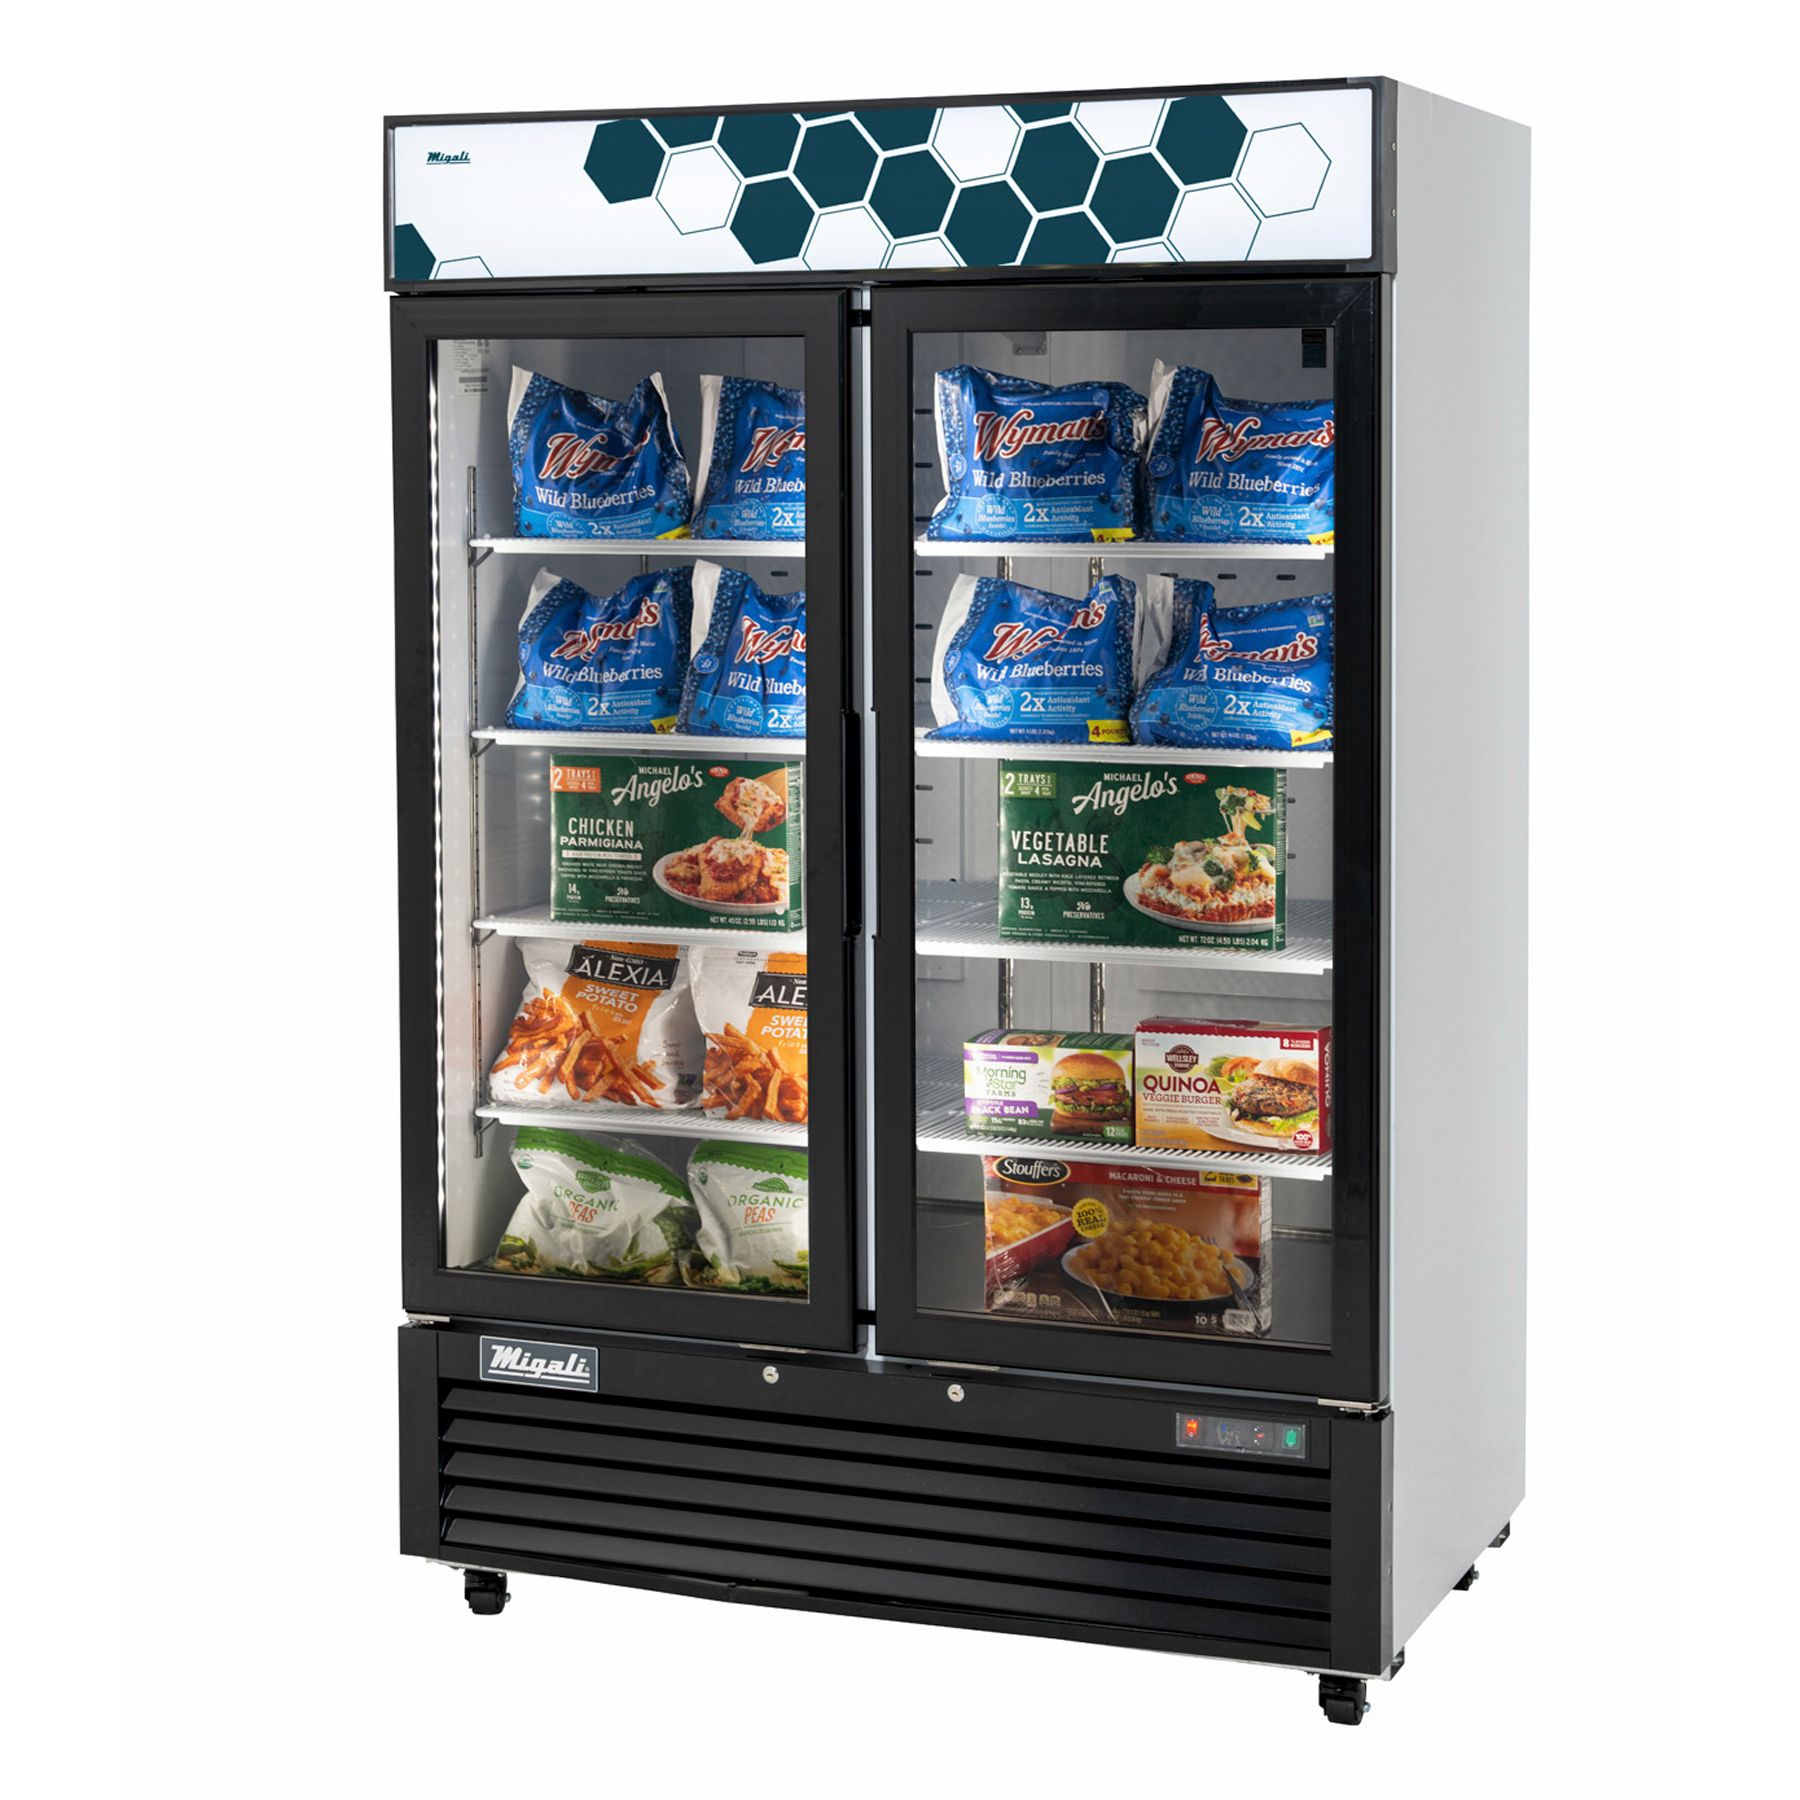 migali-c-49fm-hce-Glass-Door-Merchandiser-Freezer